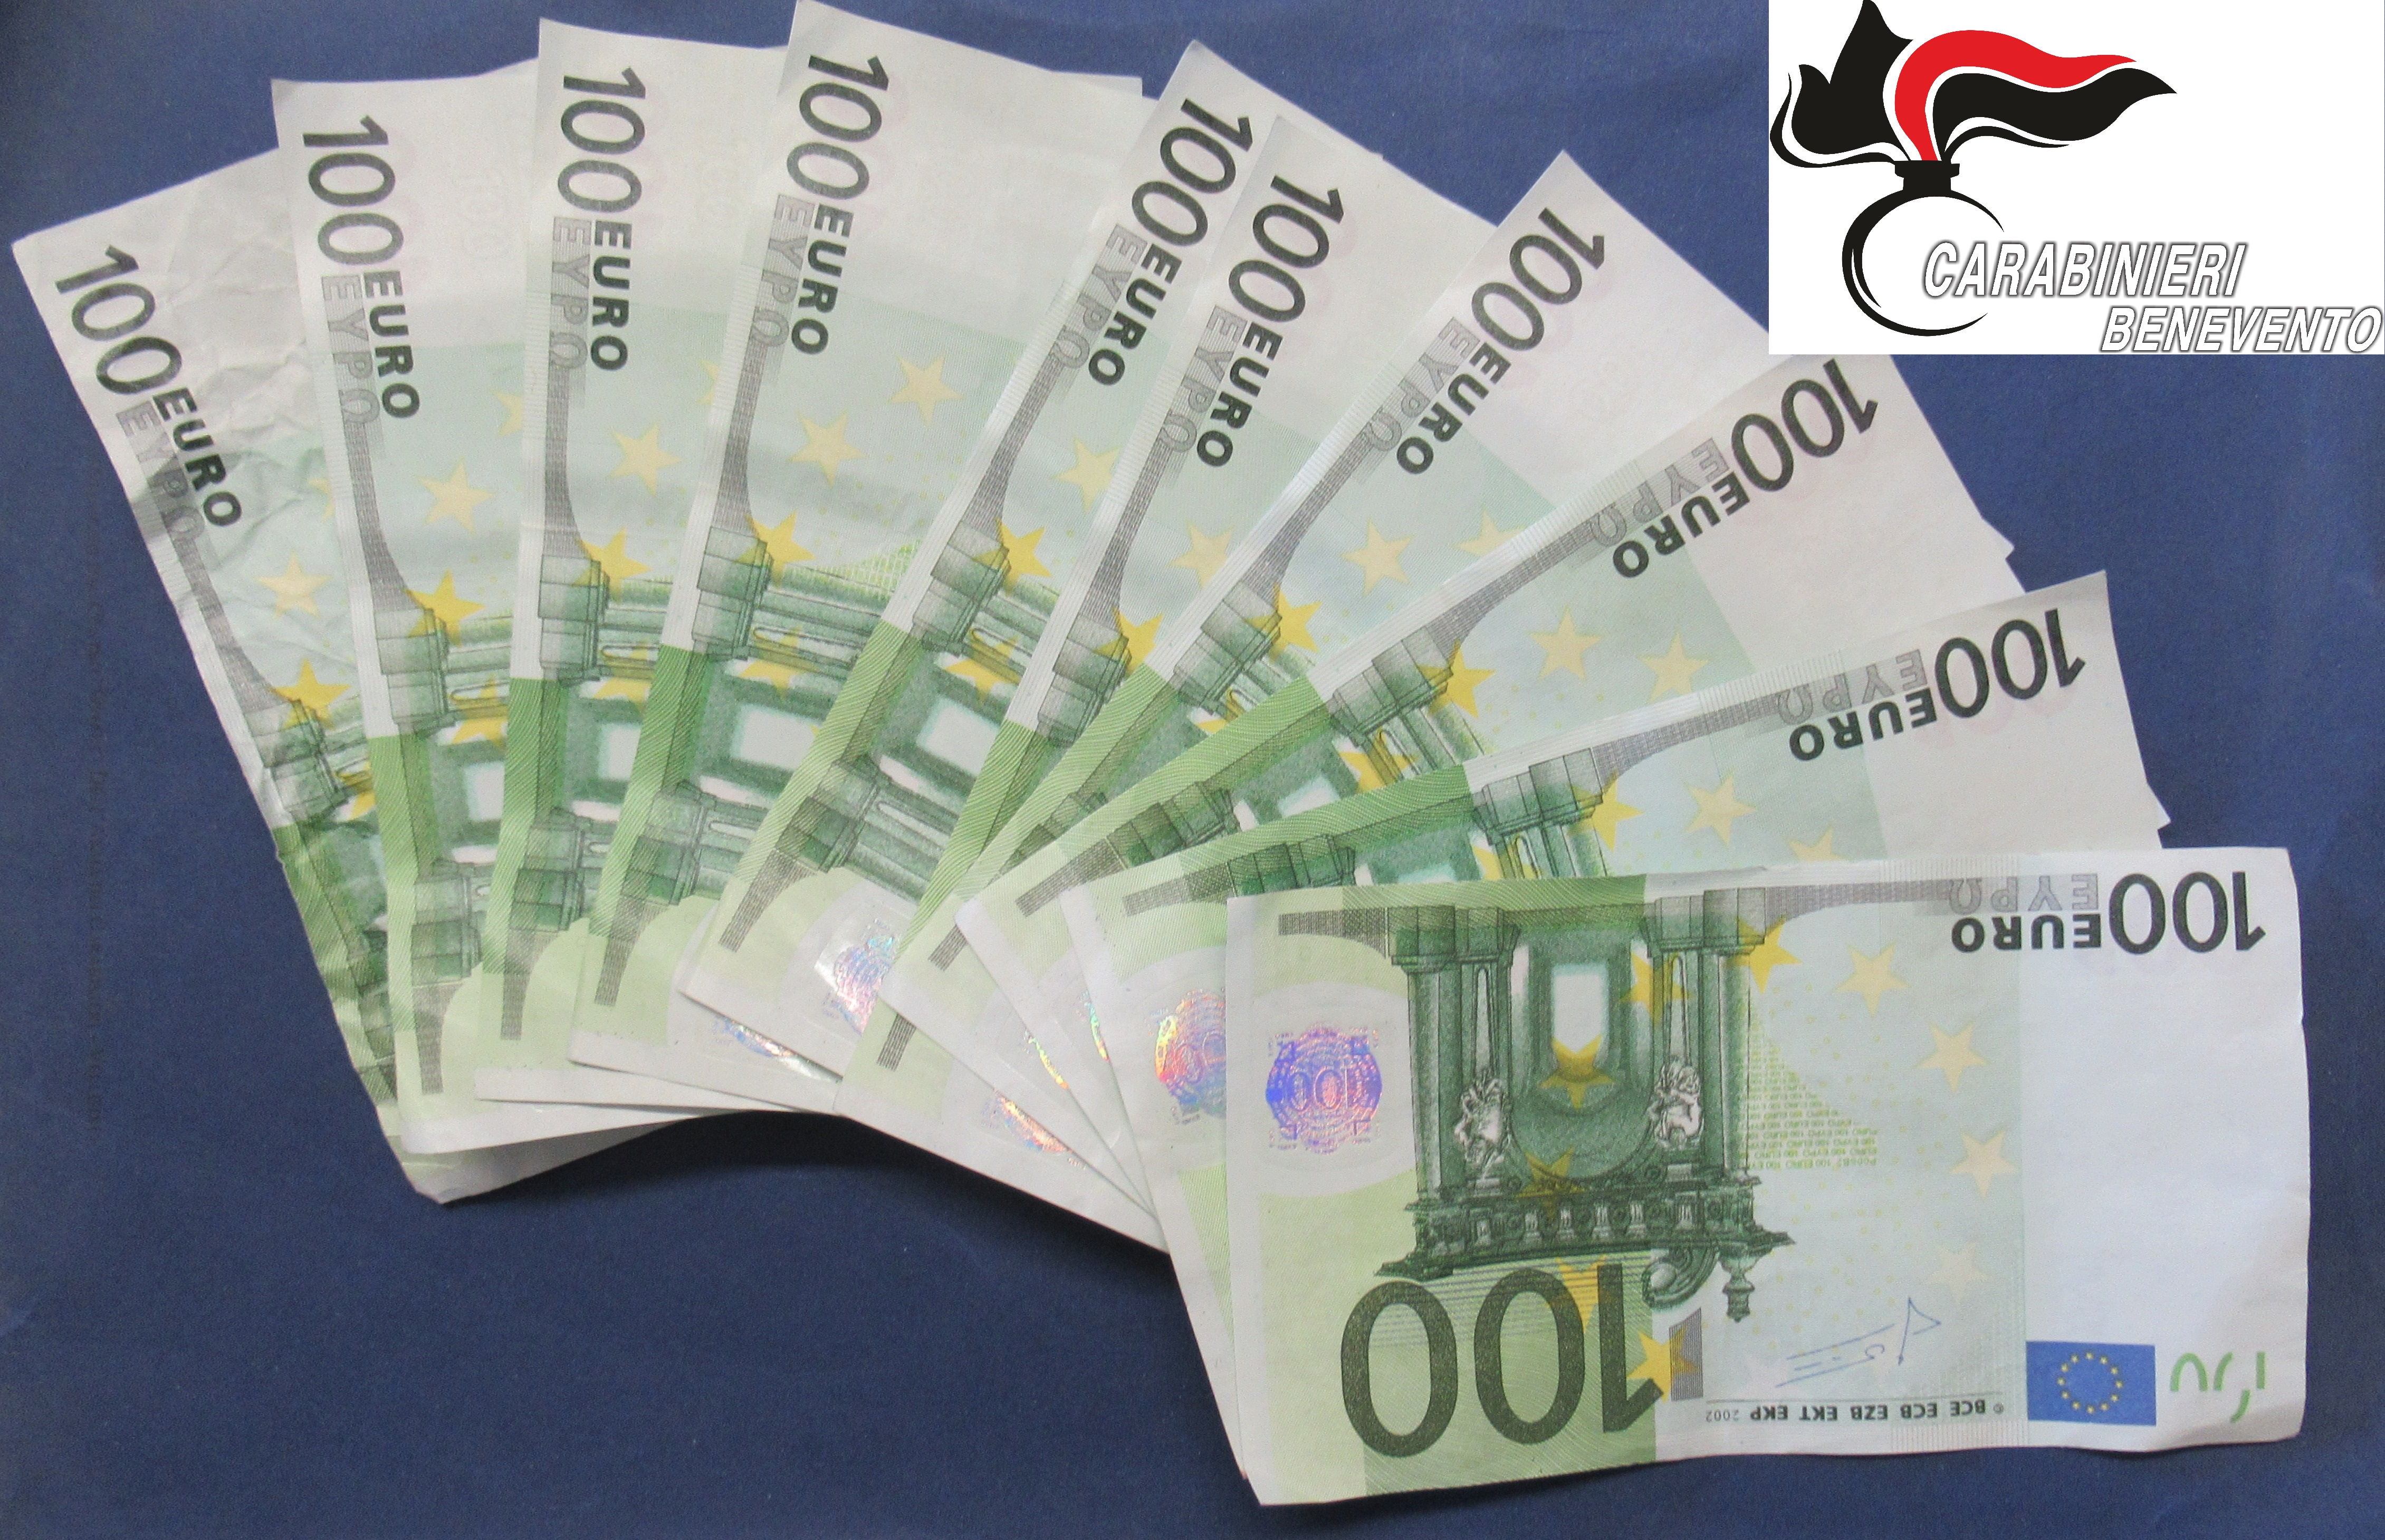 San Nicola Manfredi| Mille euro in banconote false nella borsa, donna denunciata